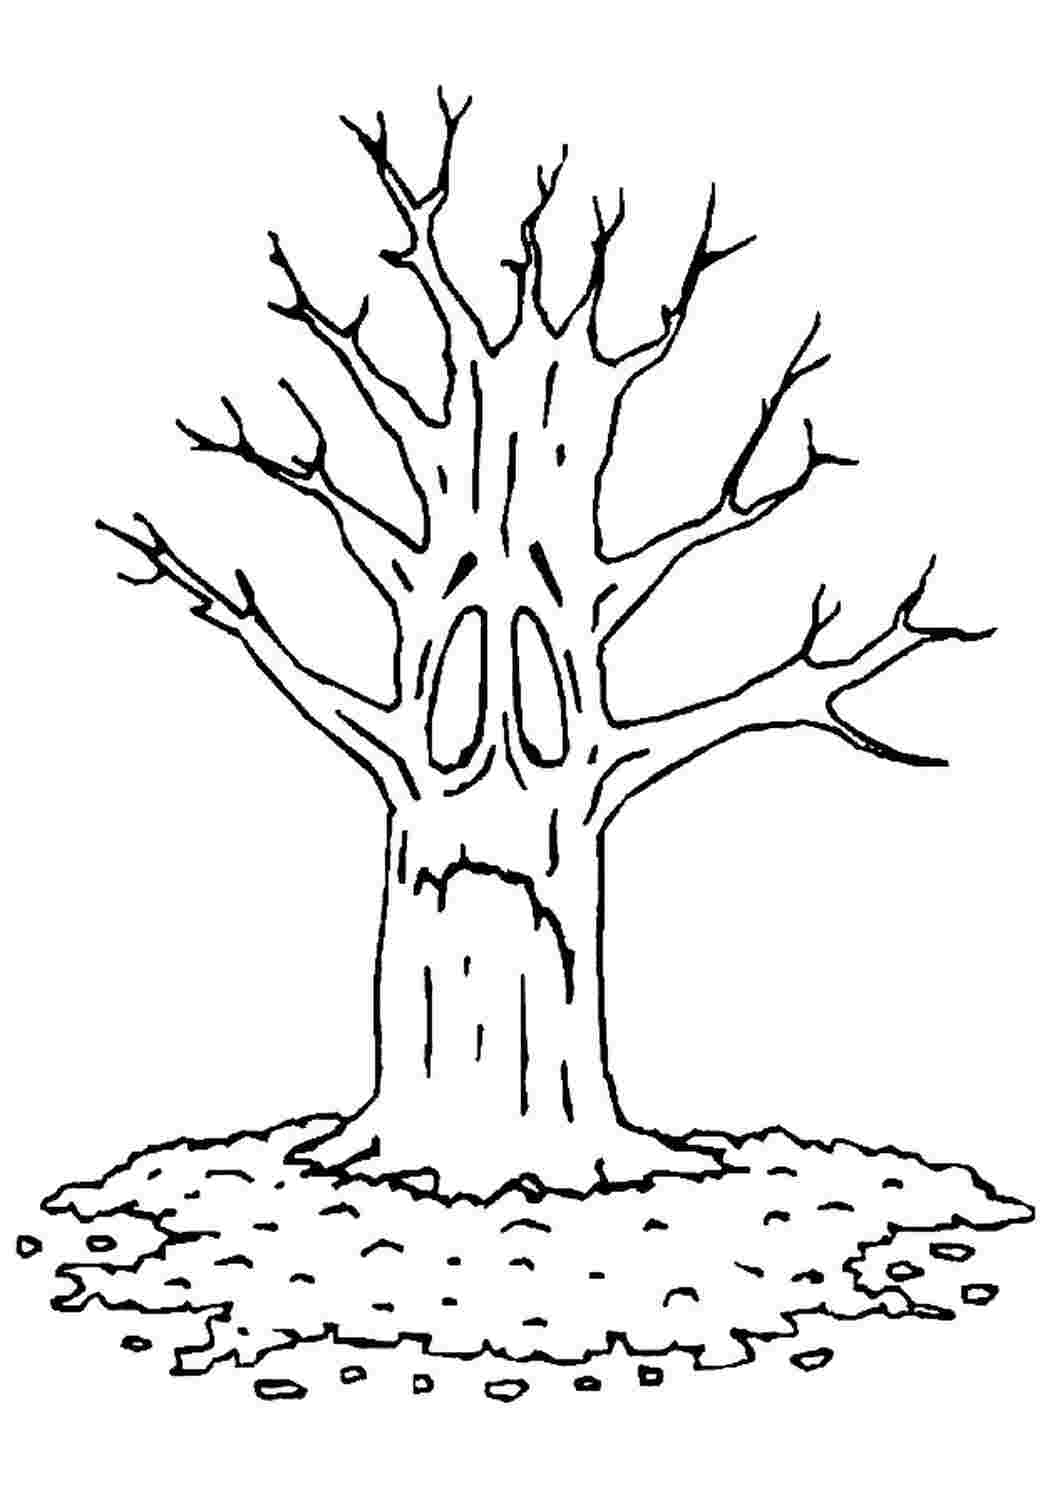 Раскраски Раскраска Раскраска дерево без листьев распечатать. Раскраски для развития. Раскраска Раскраска дерево без листьев распечатать. Раскраска.